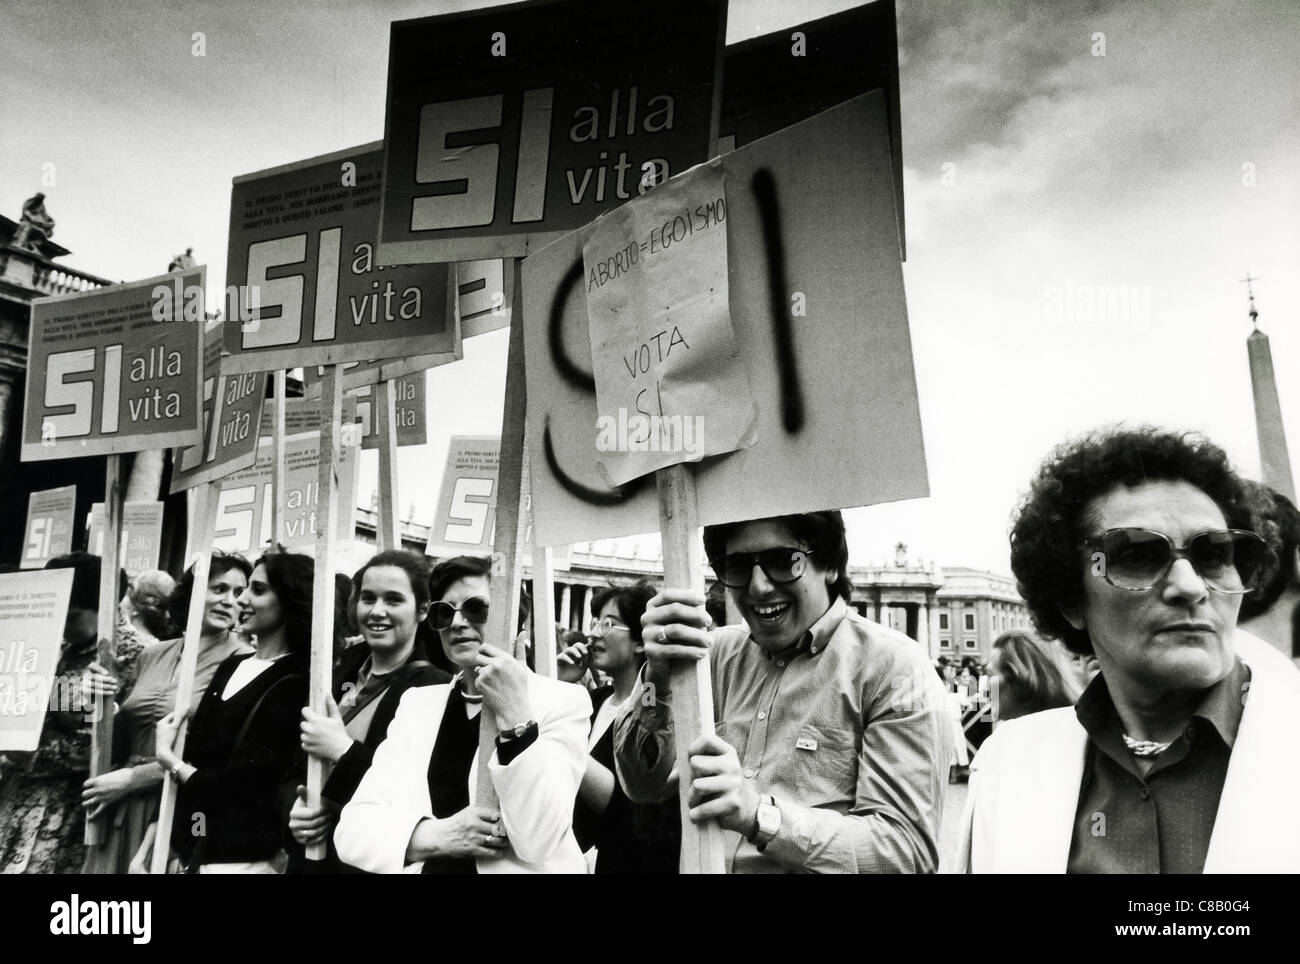 Dimostrazione cattolica contro la legalizzazione dell aborto,1976 Foto Stock